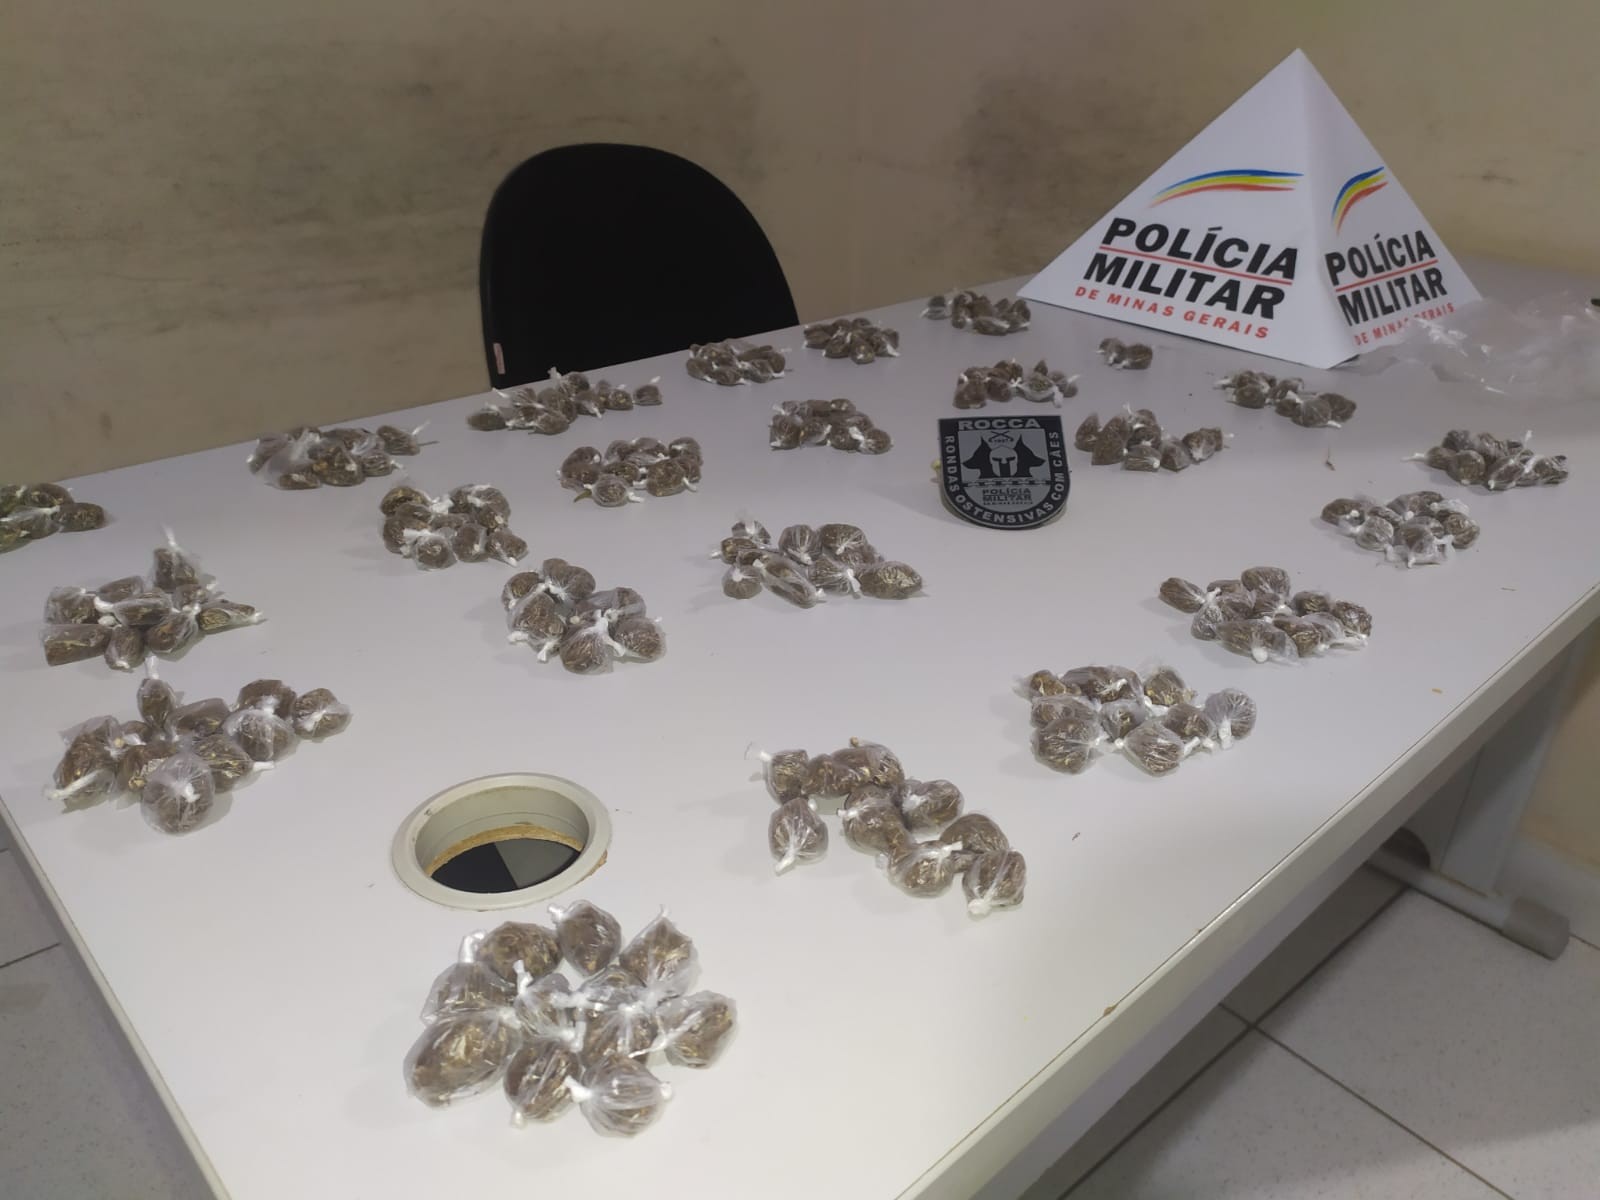 Com ajuda de cão farejador, polícia apreende mais de 200 buchas de maconha em Montes Claros